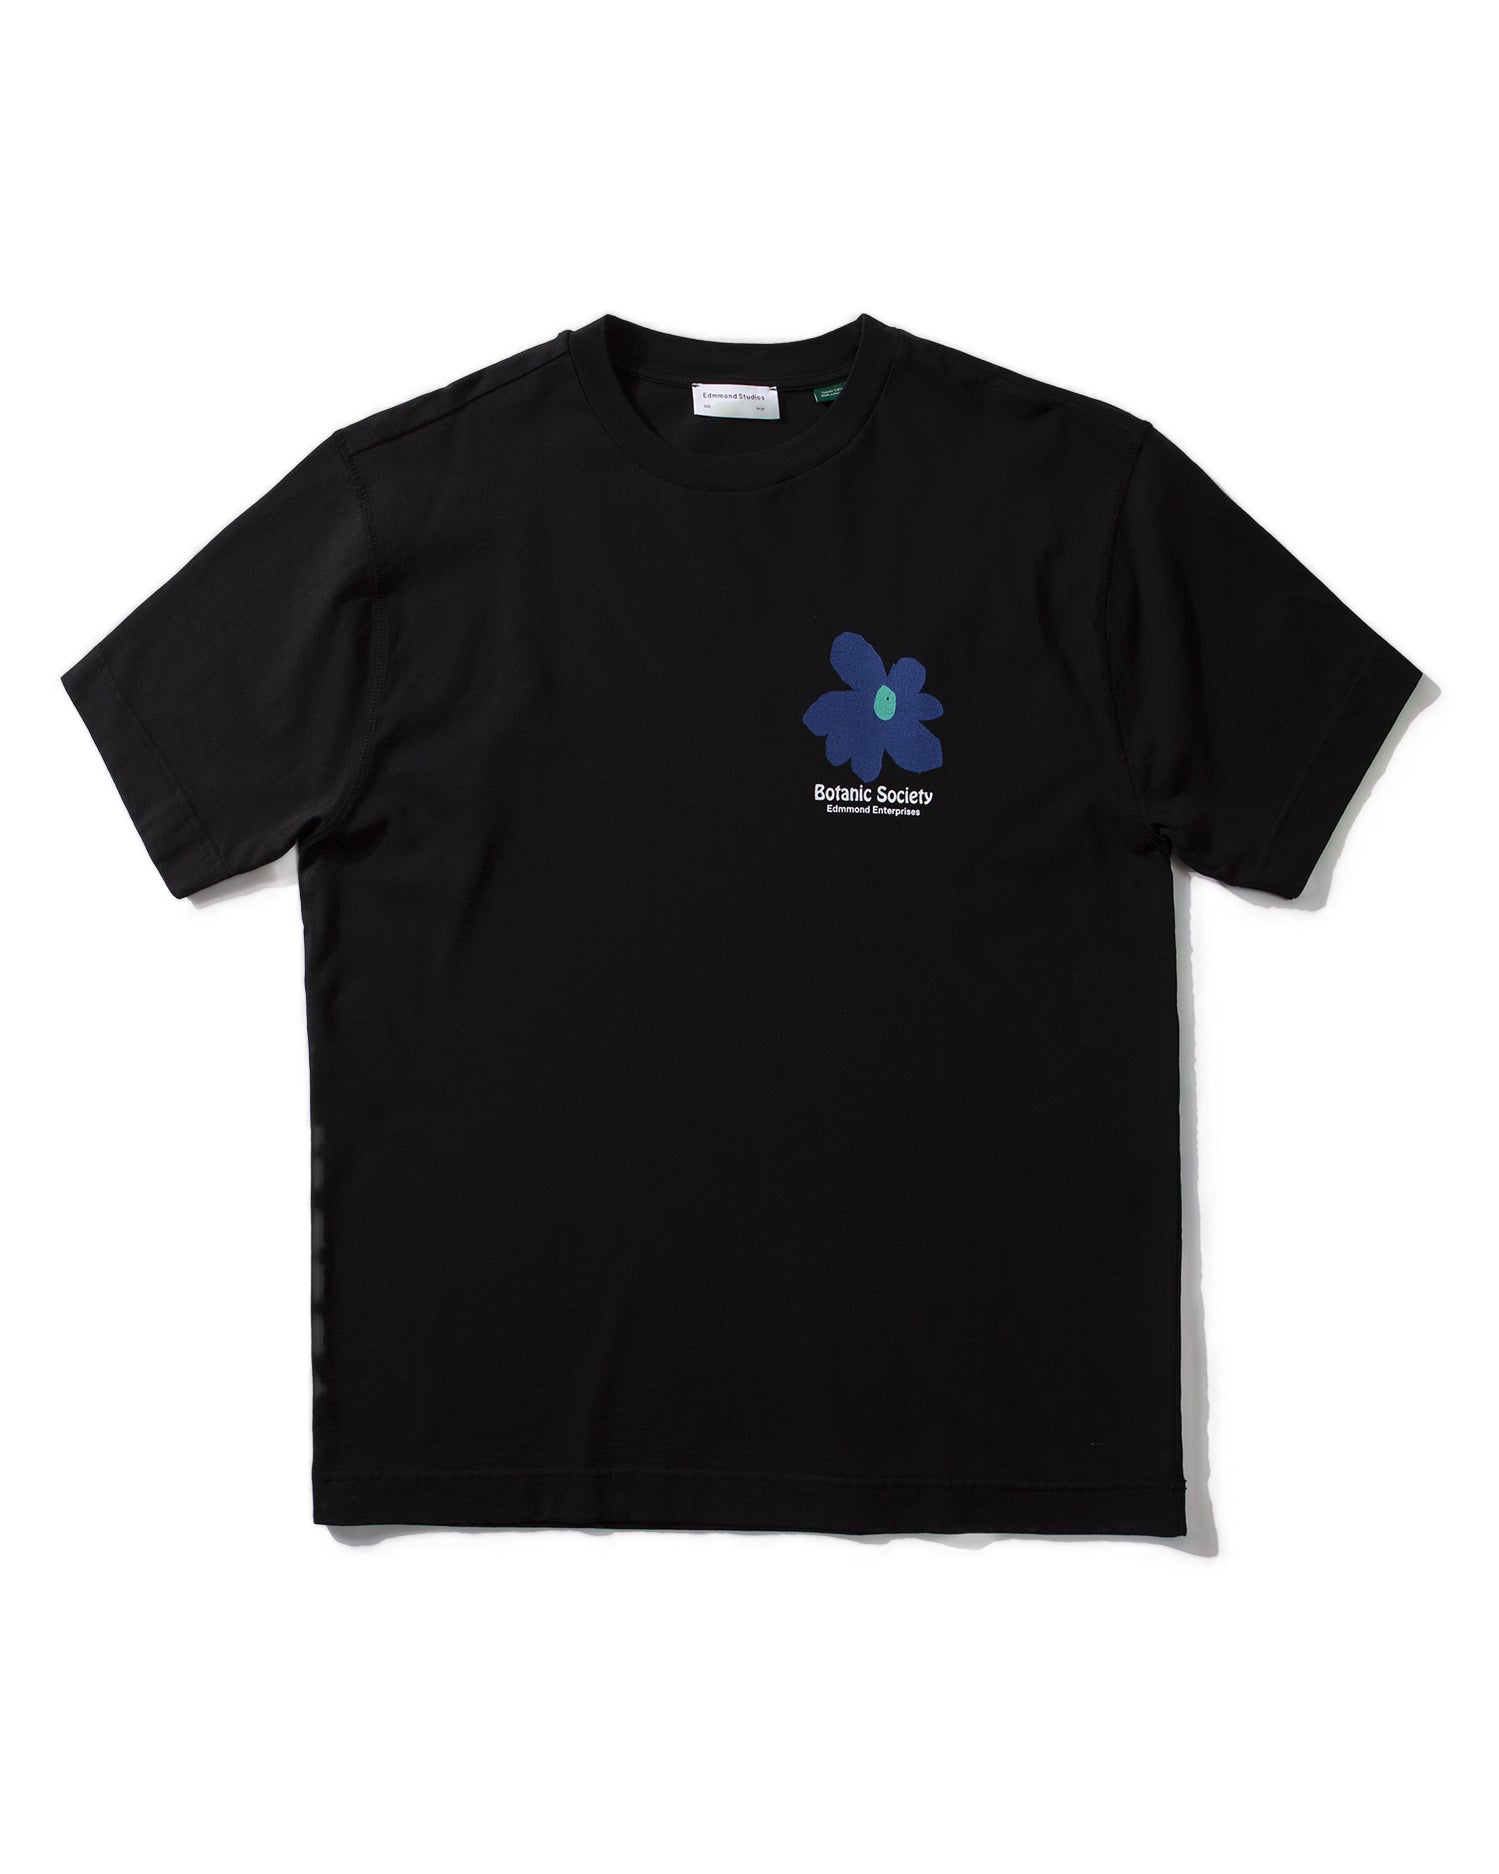 T-shirt de la Société Botanique - Noir